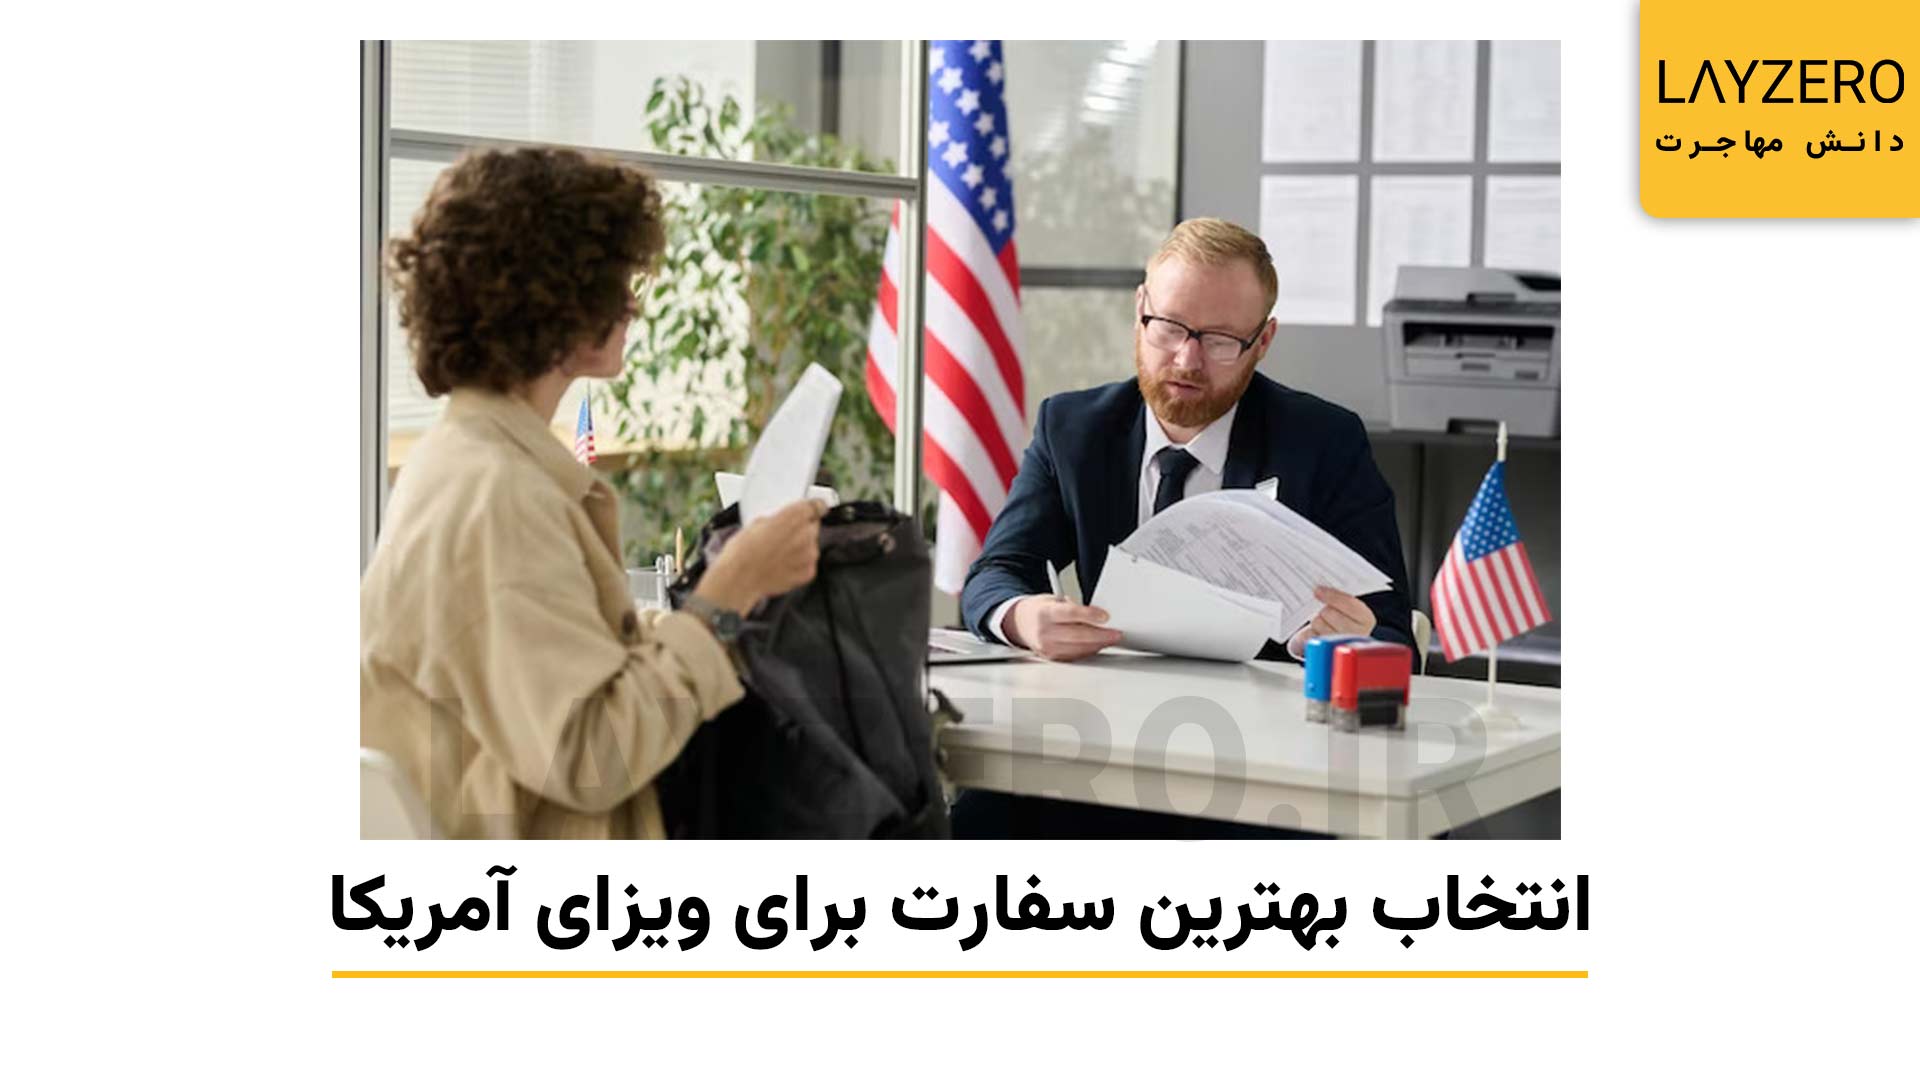 بهترین سفارت آمریکا برای گرفتن ویزای توریستی